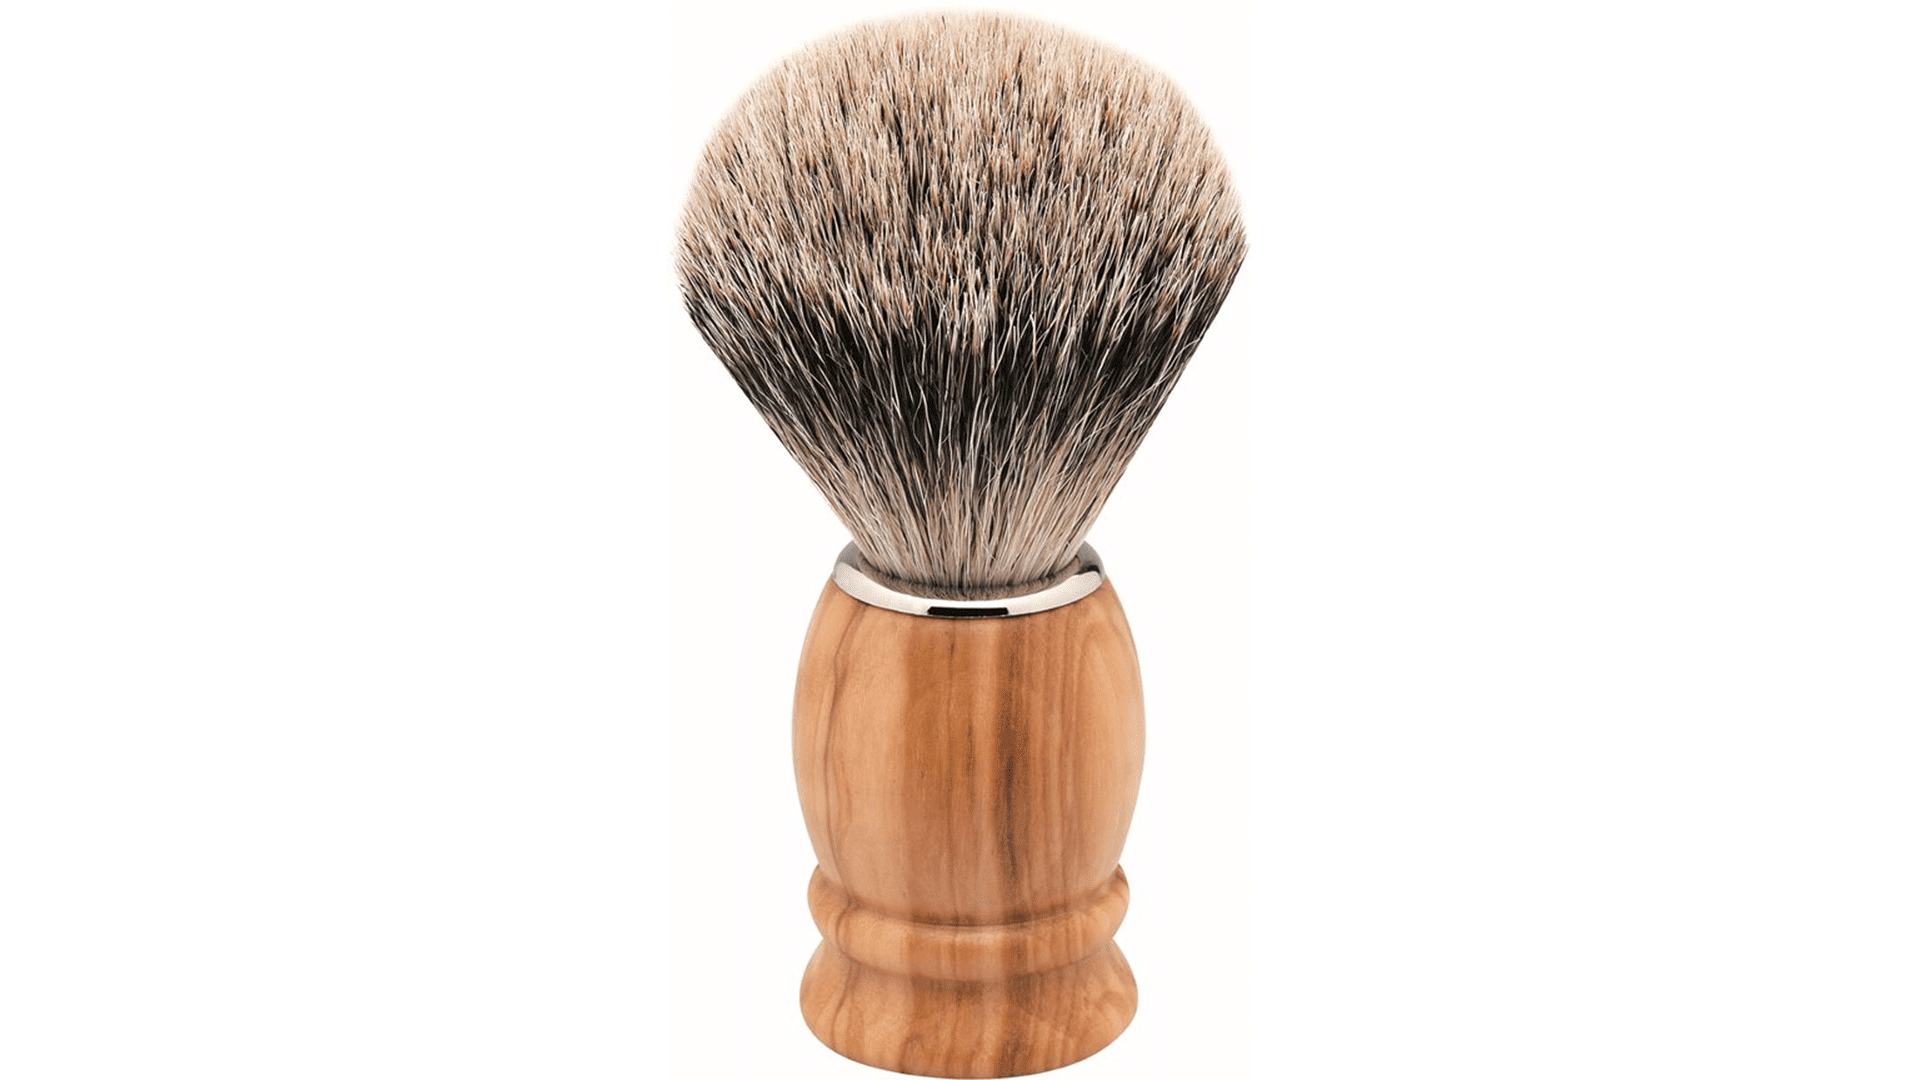 olive L | Rottner badger brush sales Erbe shaving wood hair Knife